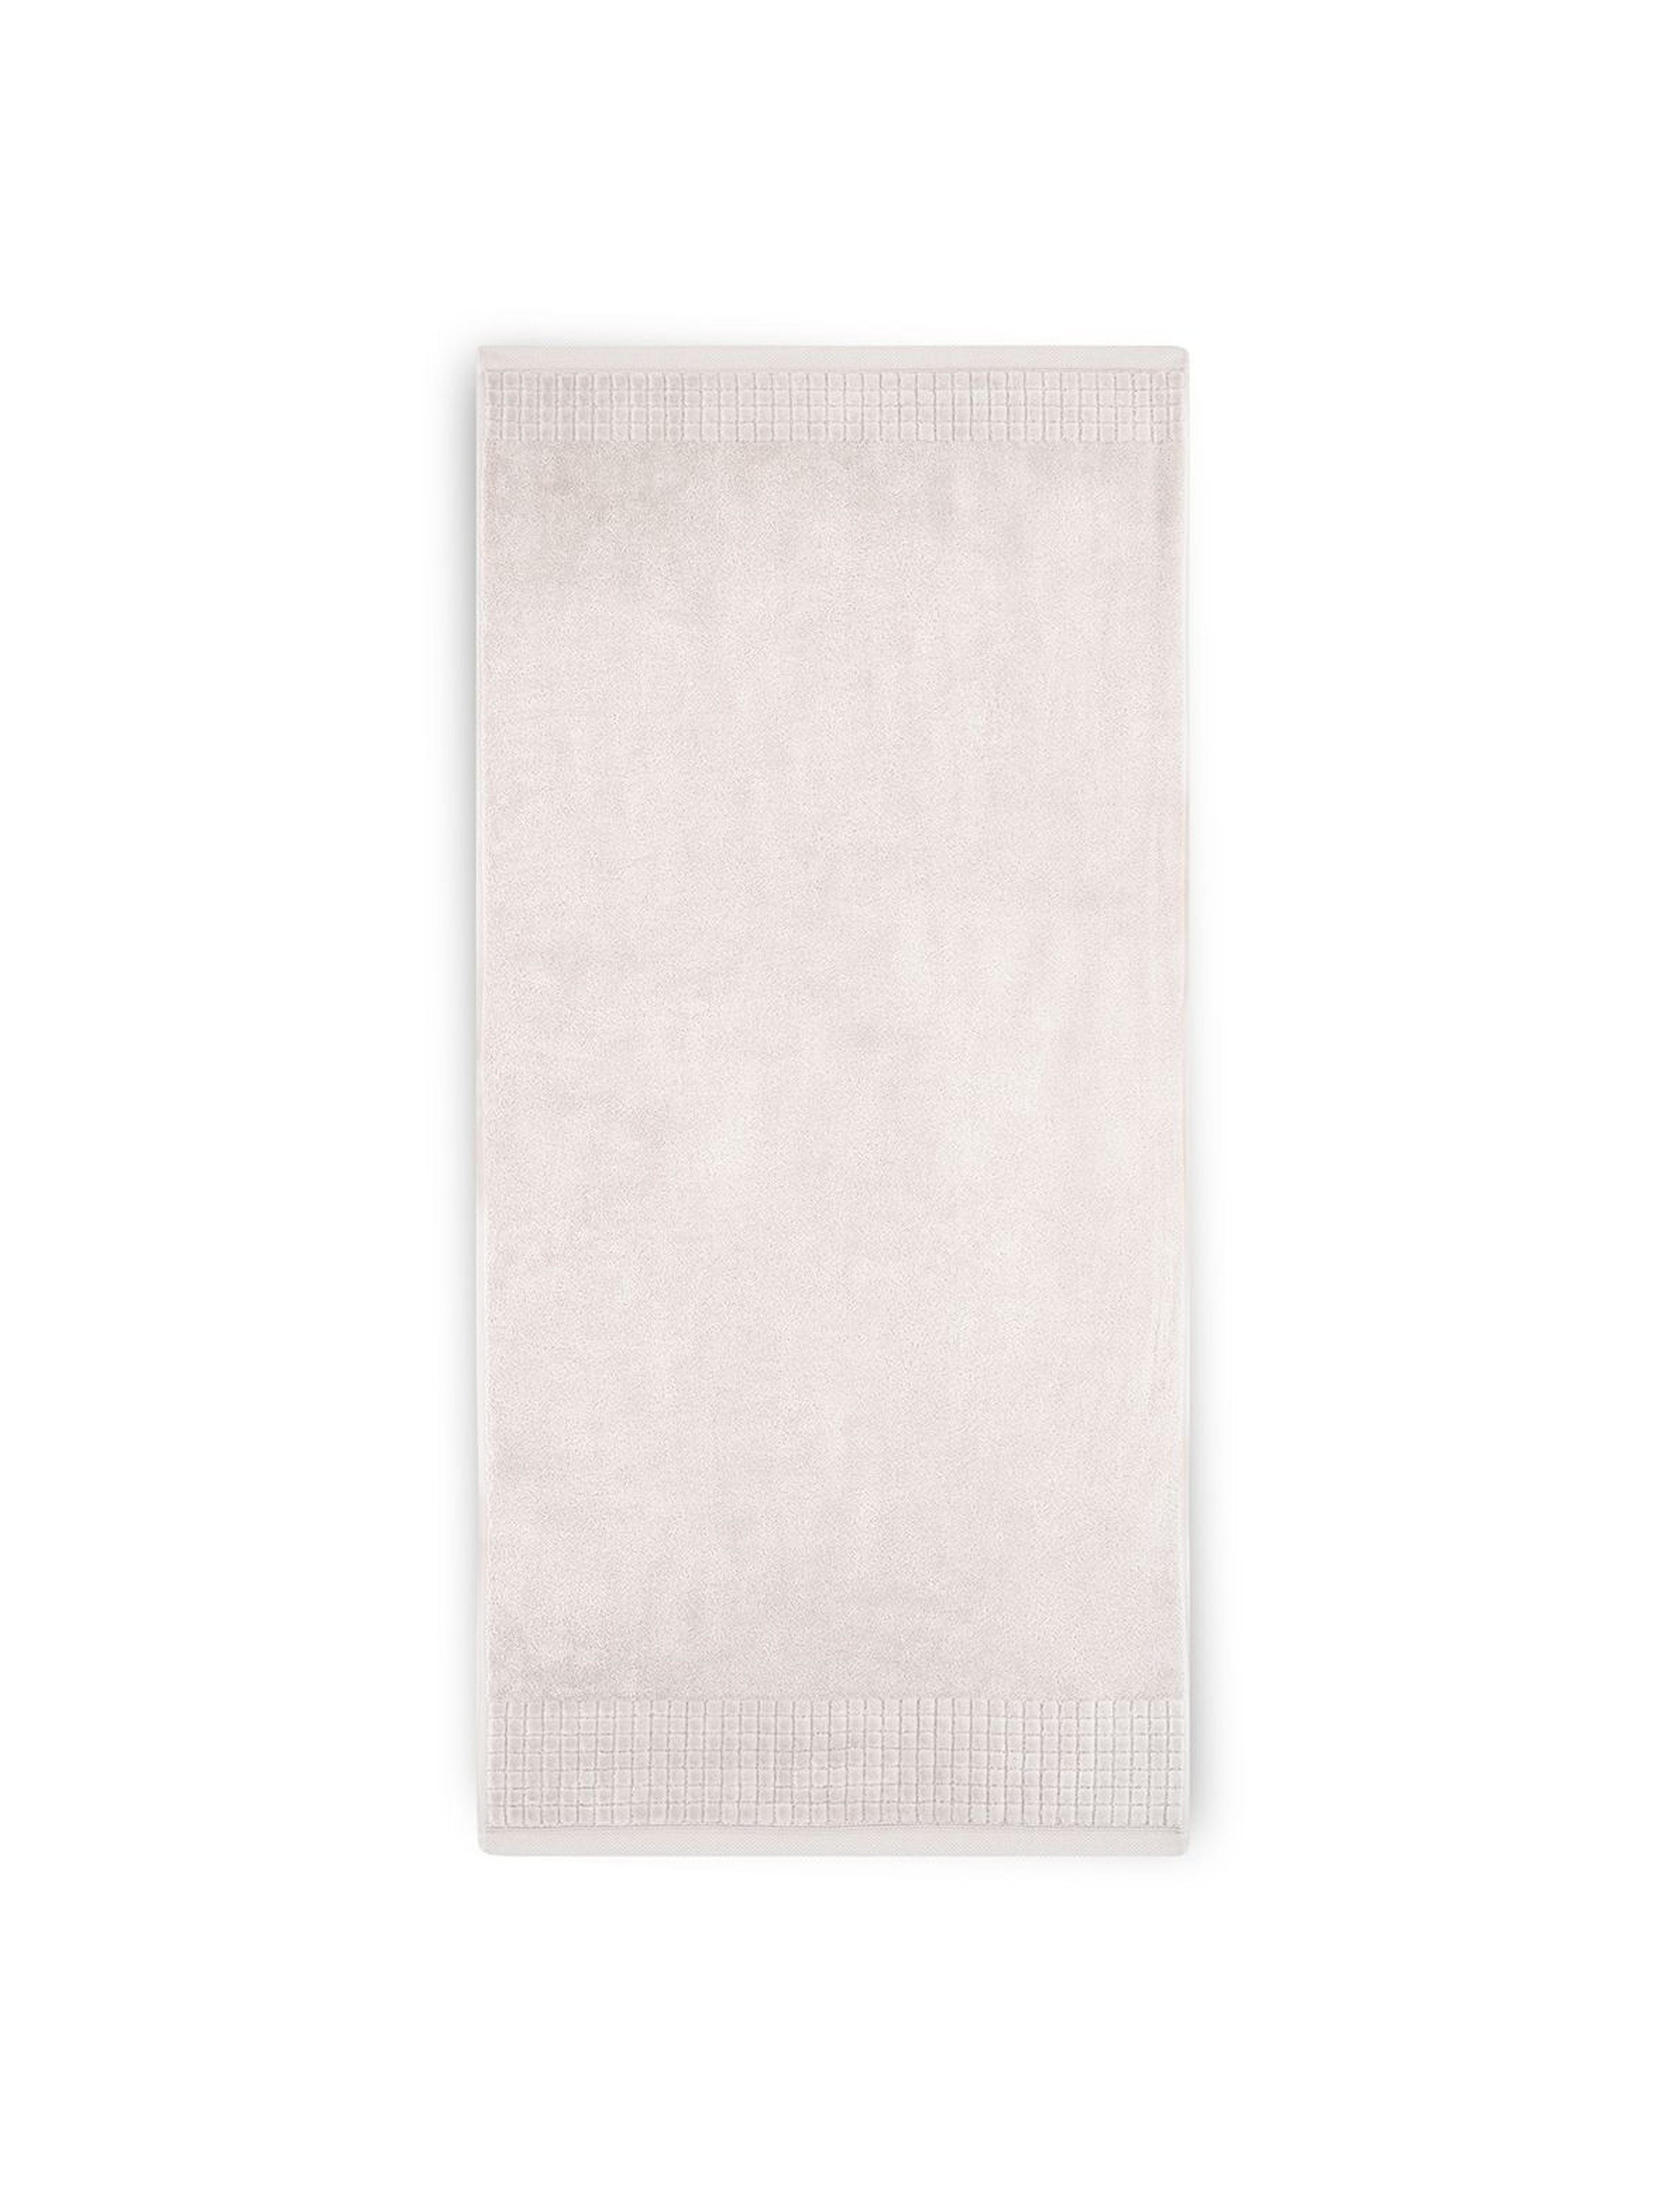 Ręcznik Paulo z bawełny egipskiej 50x100 cm sepia